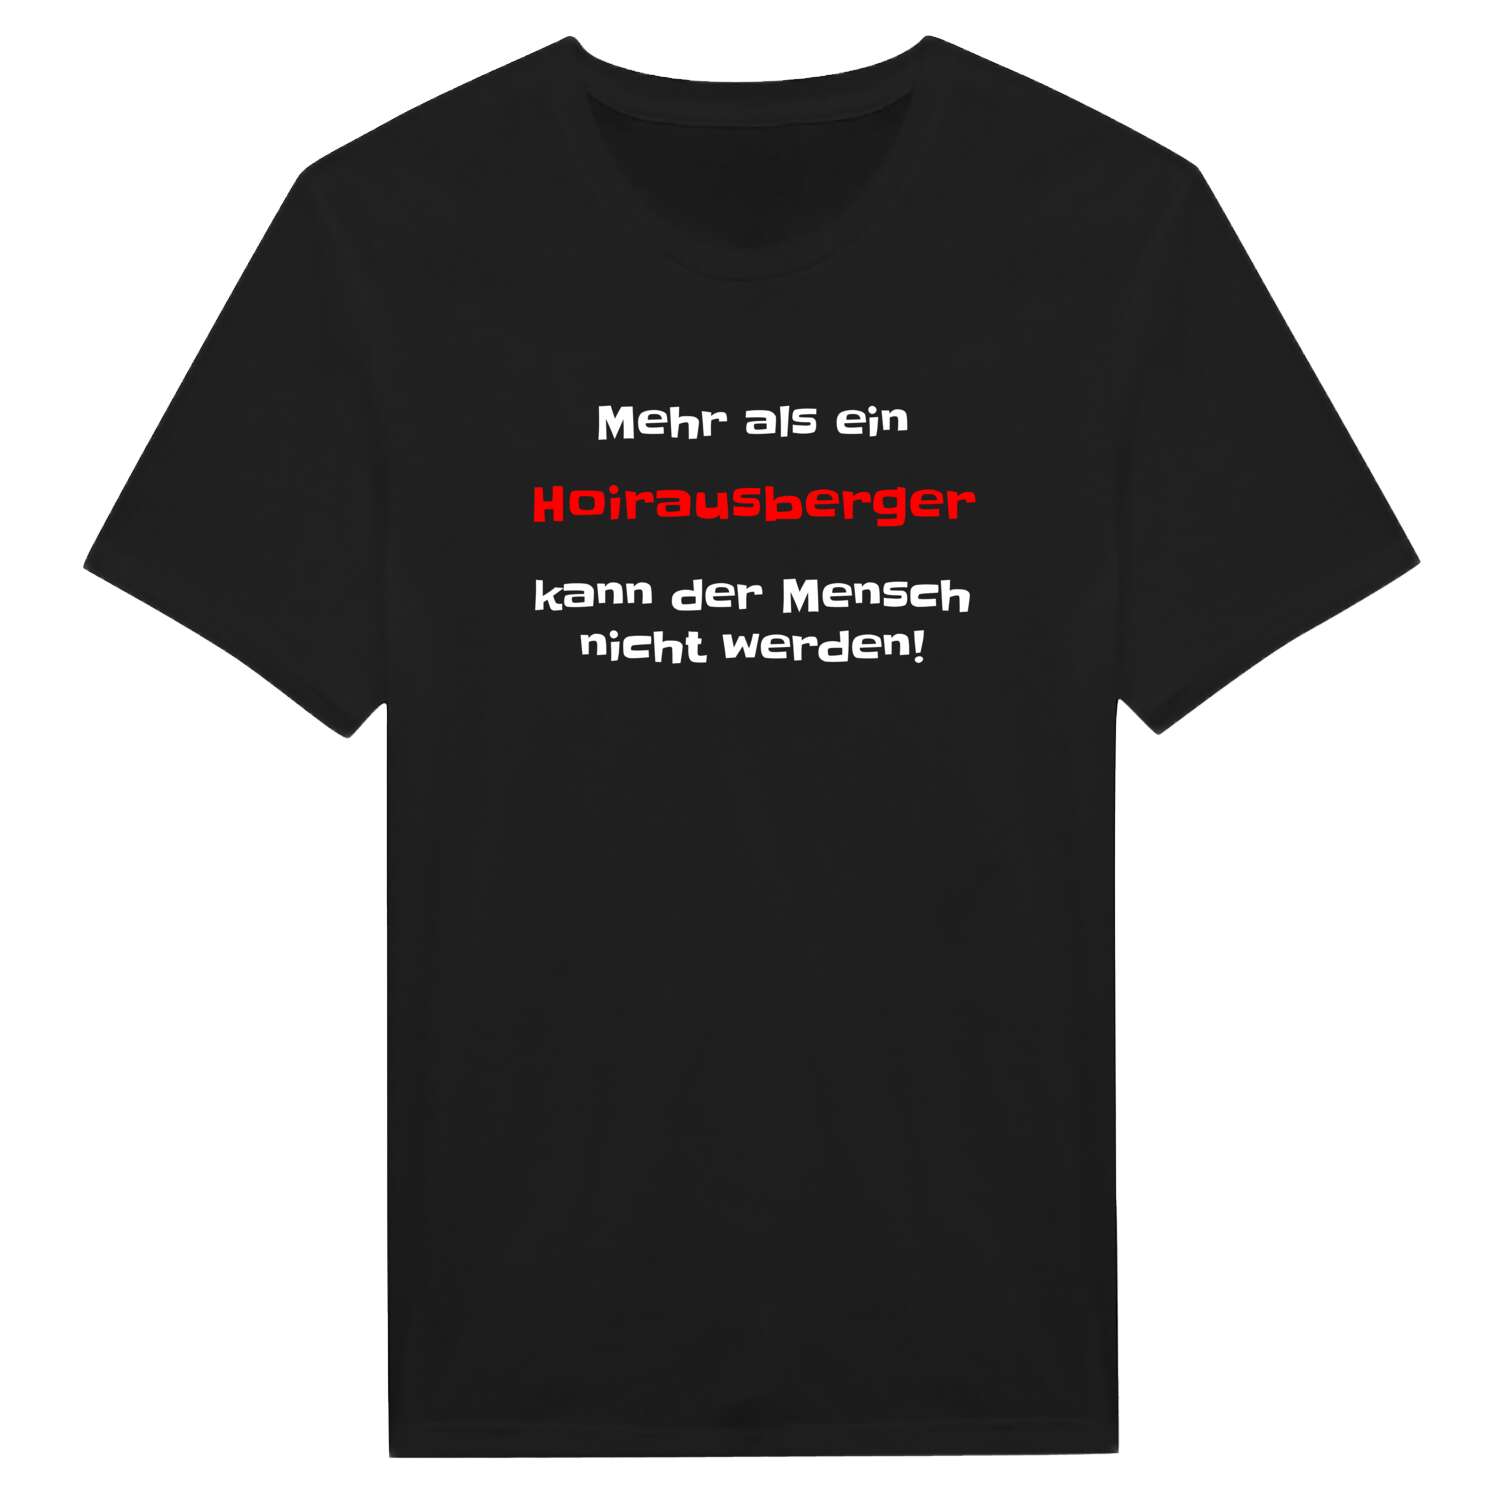 Hoirausberg T-Shirt »Mehr als ein«